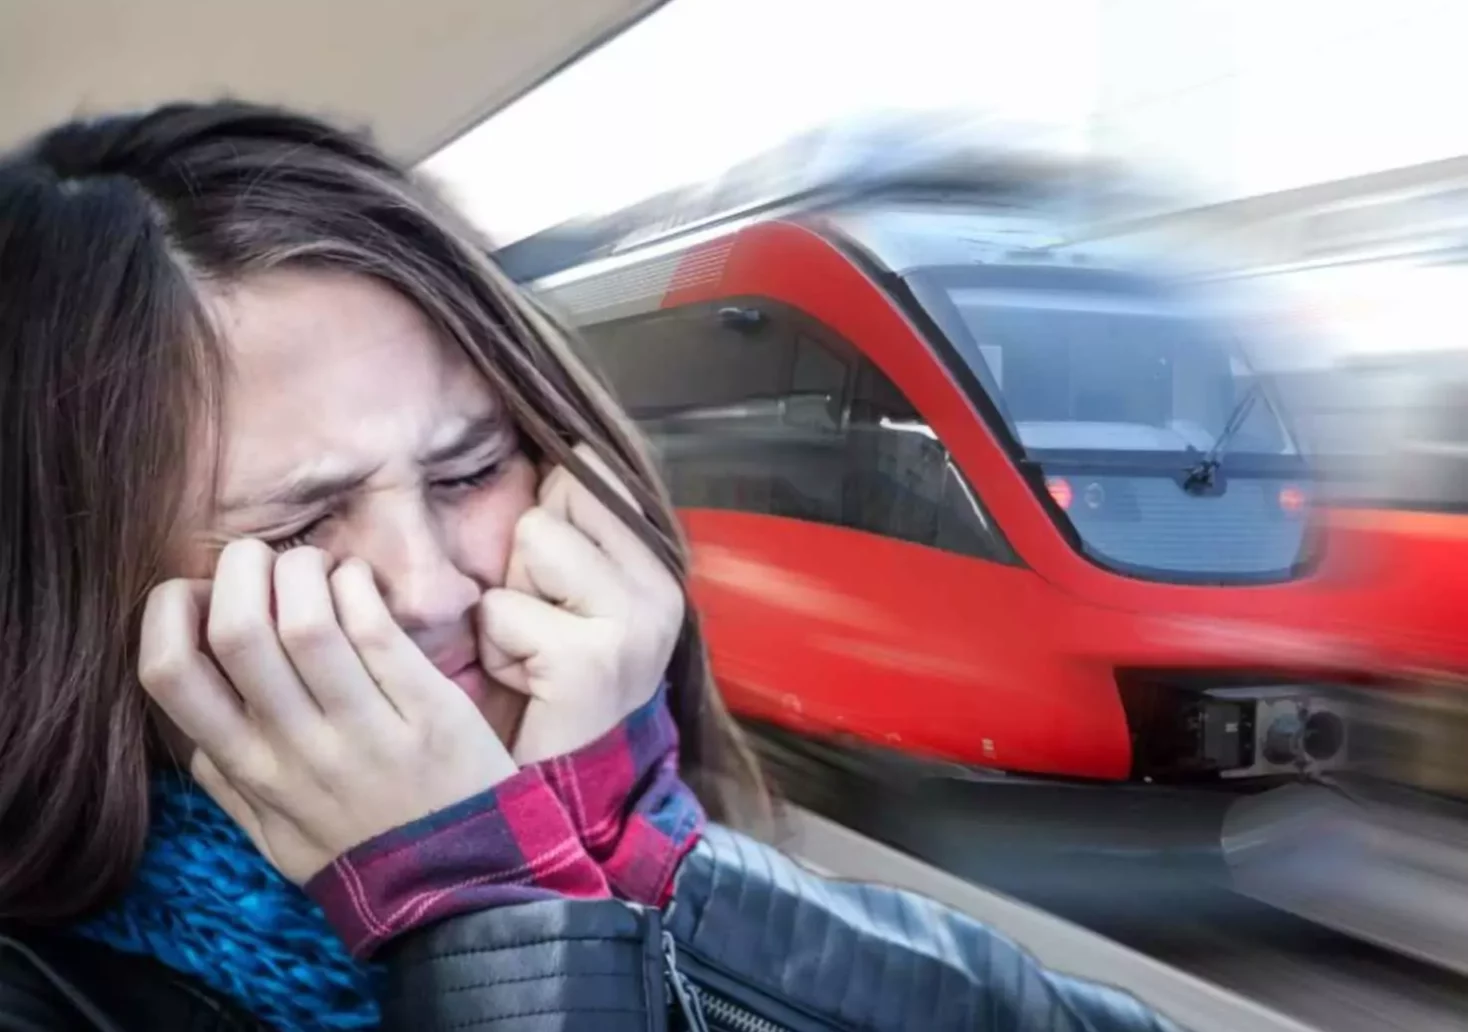 Foto in Beitrag von 5min.at: Zu sehen ist ein Mädchen, das Angst hat, im Hintergrund ist ein Zug.